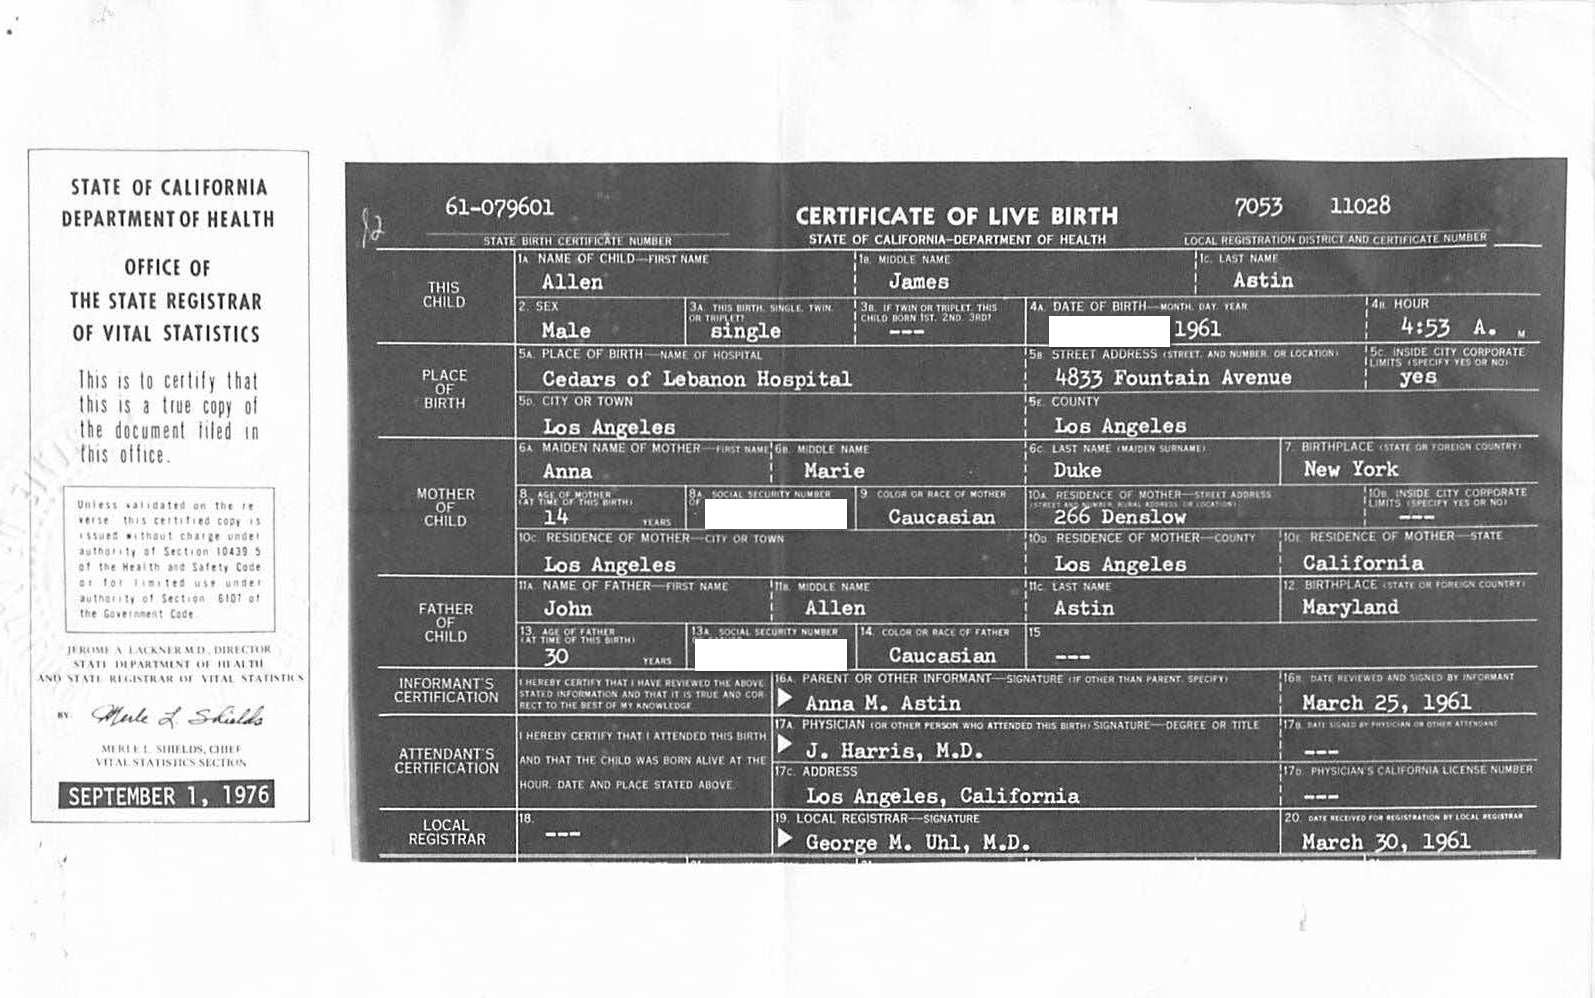 Allen's Birth Certificate from Anna